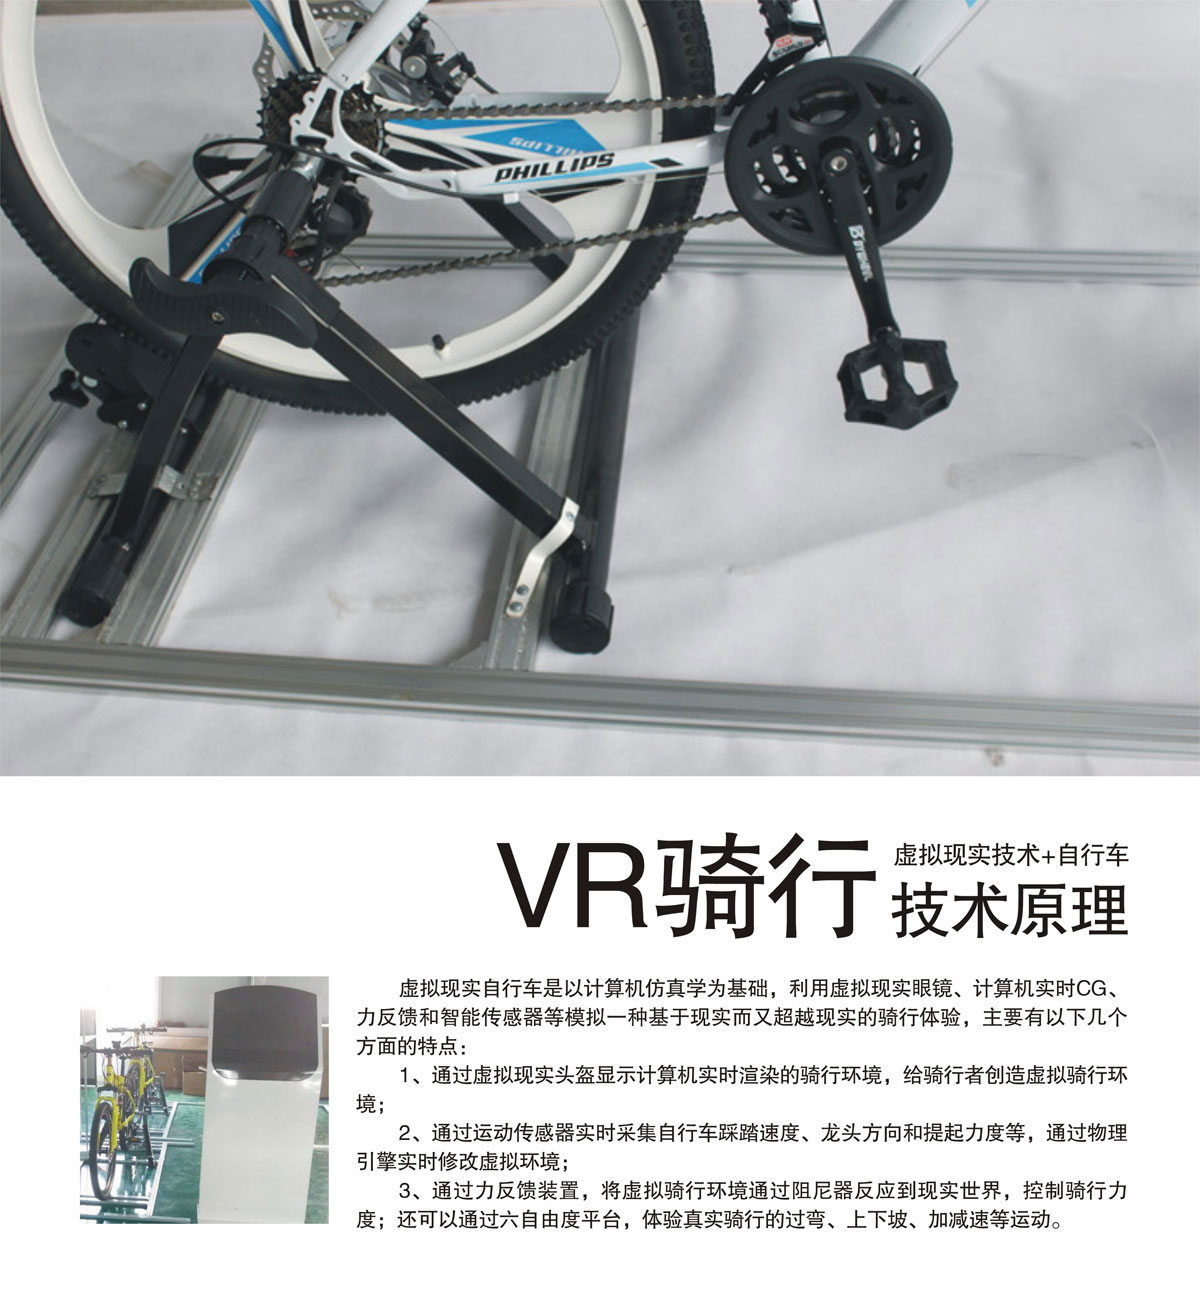 03-VR骑行技术原理.jpg